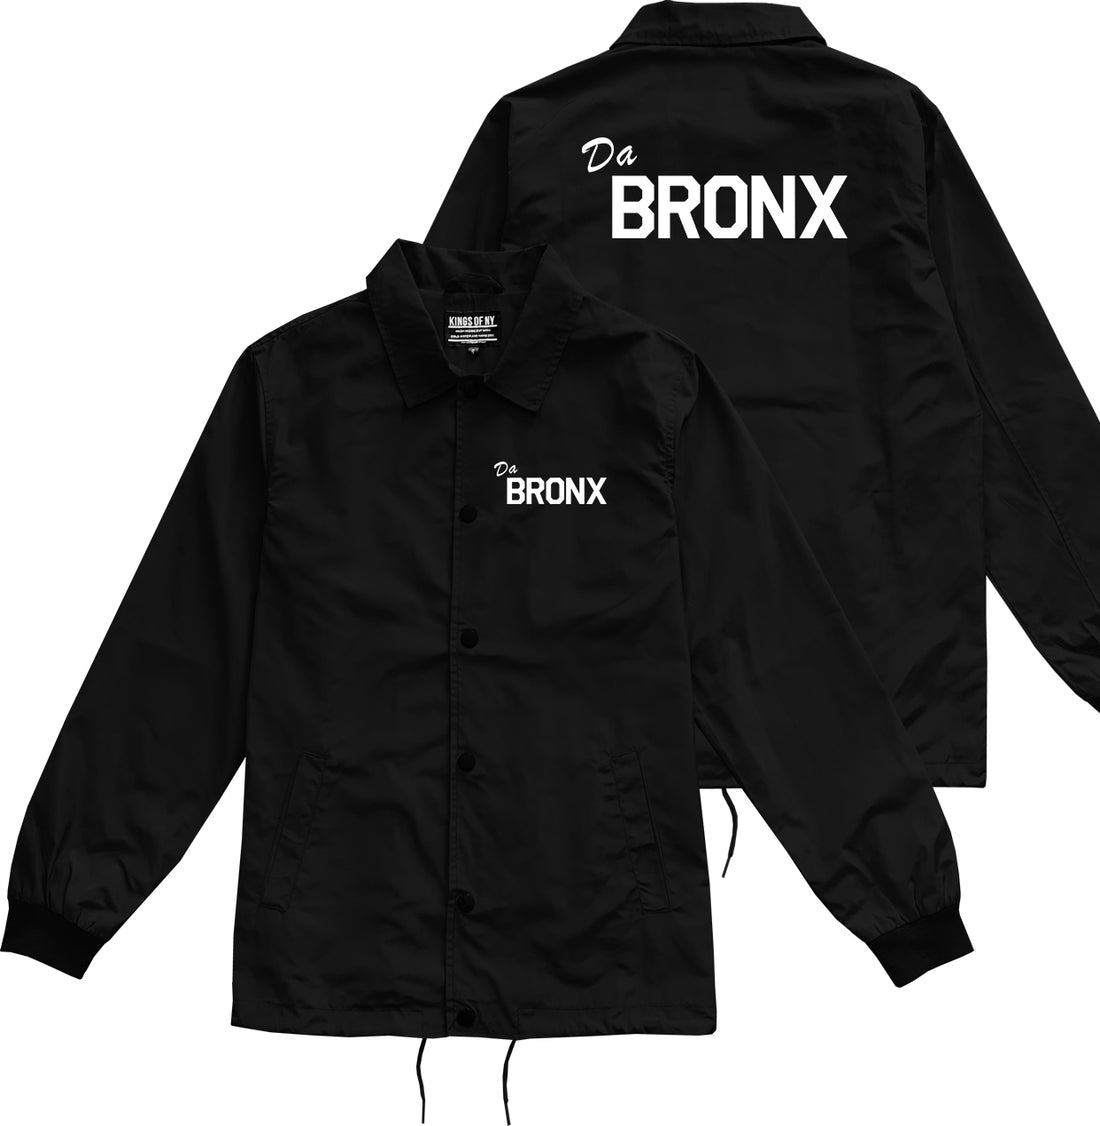 Da Bronx Mens Coaches Jacket Black by Kings Of NY